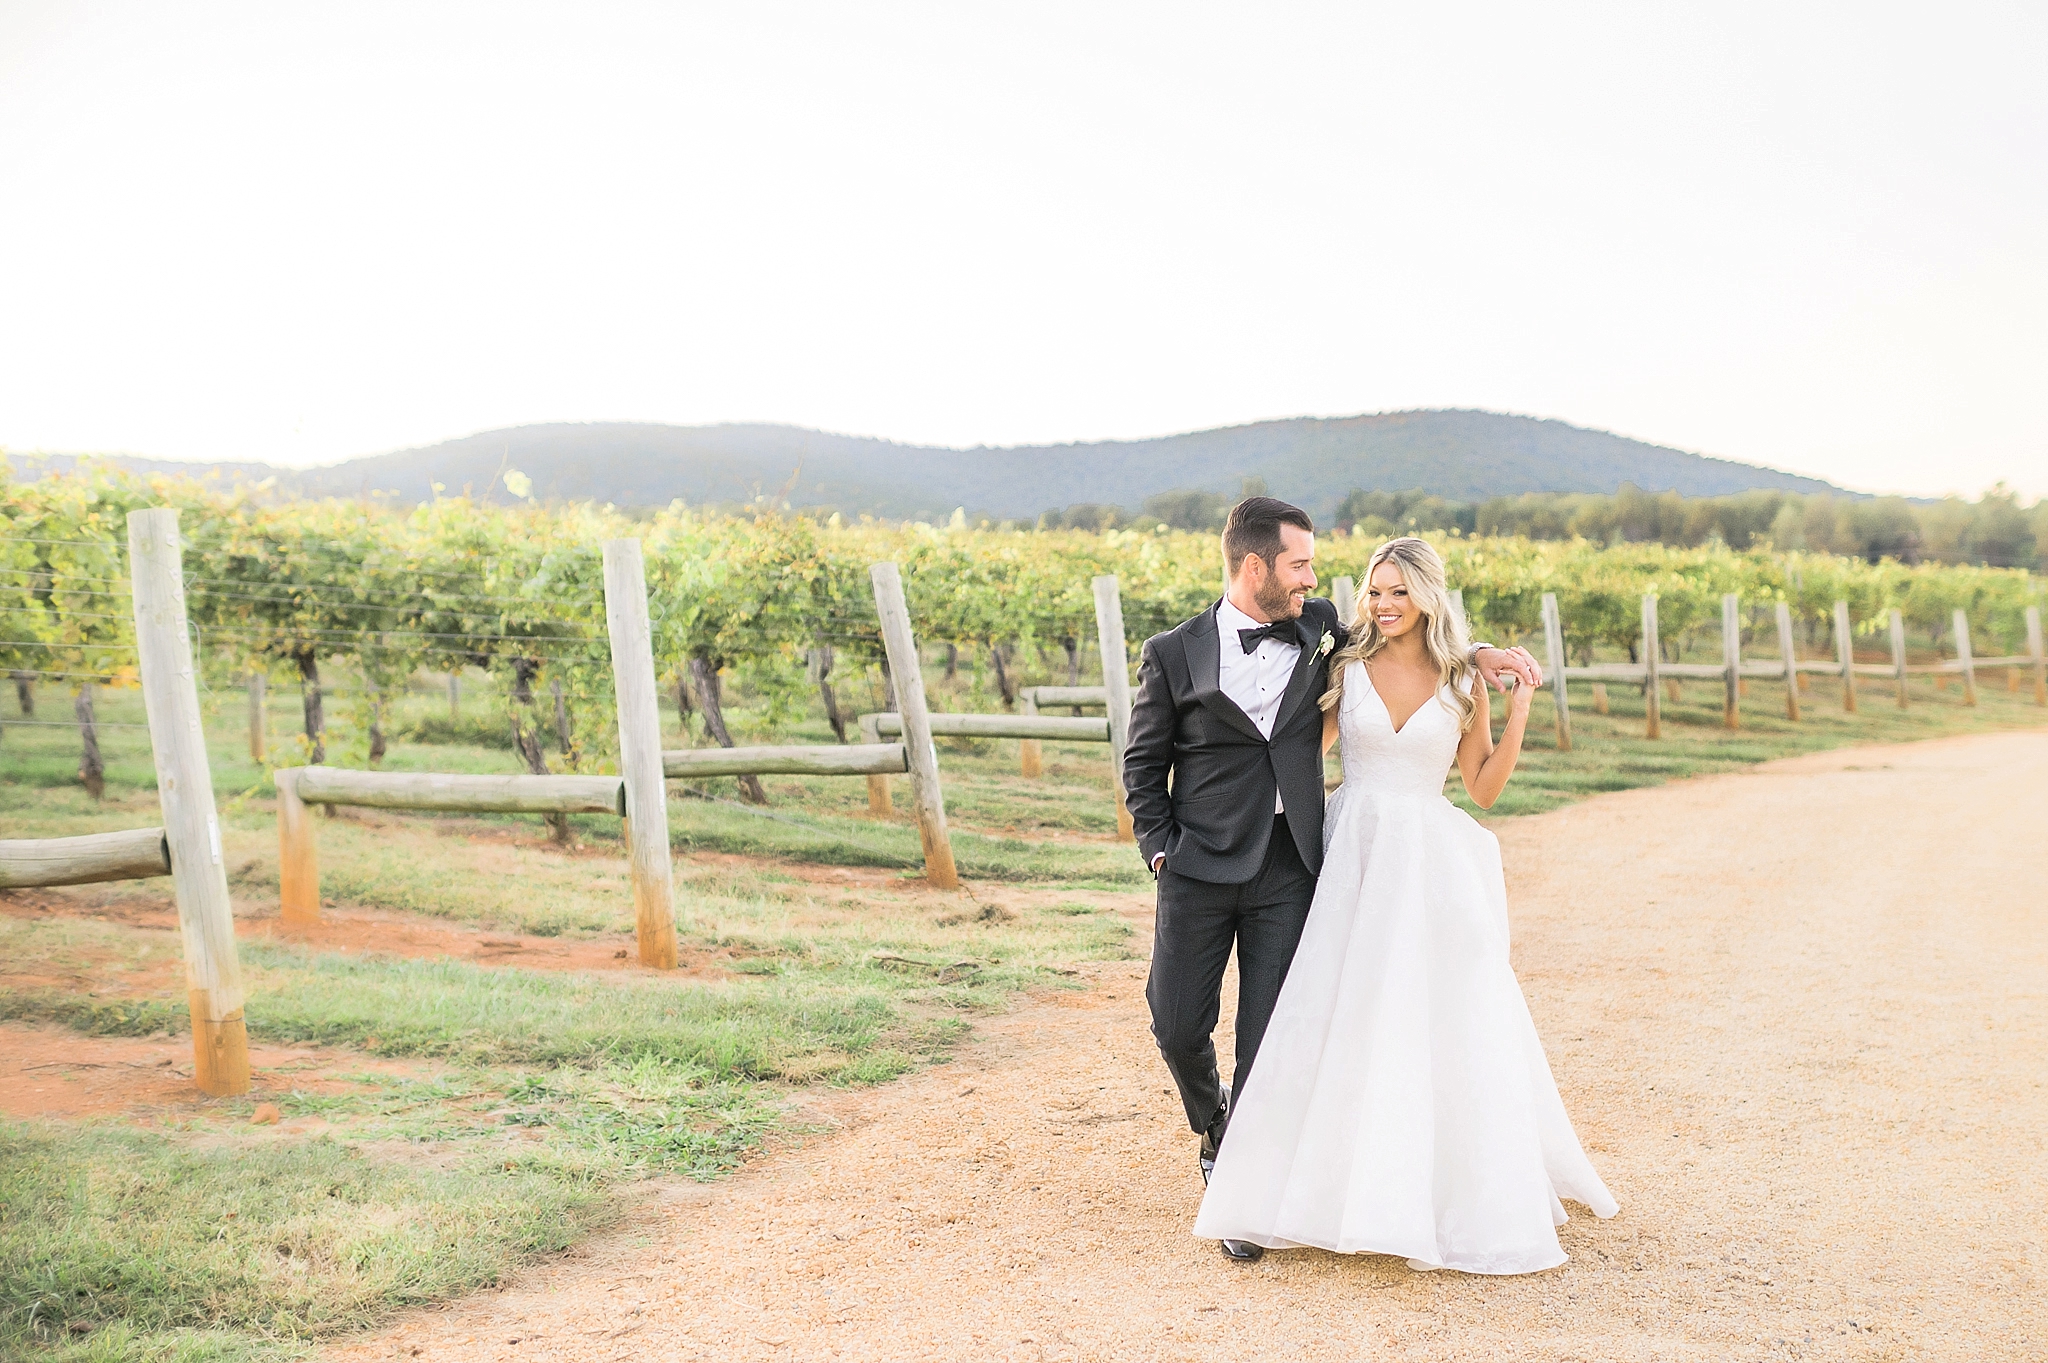 Corbin & Sara | Keswick Vineyards, Virginia Wedding